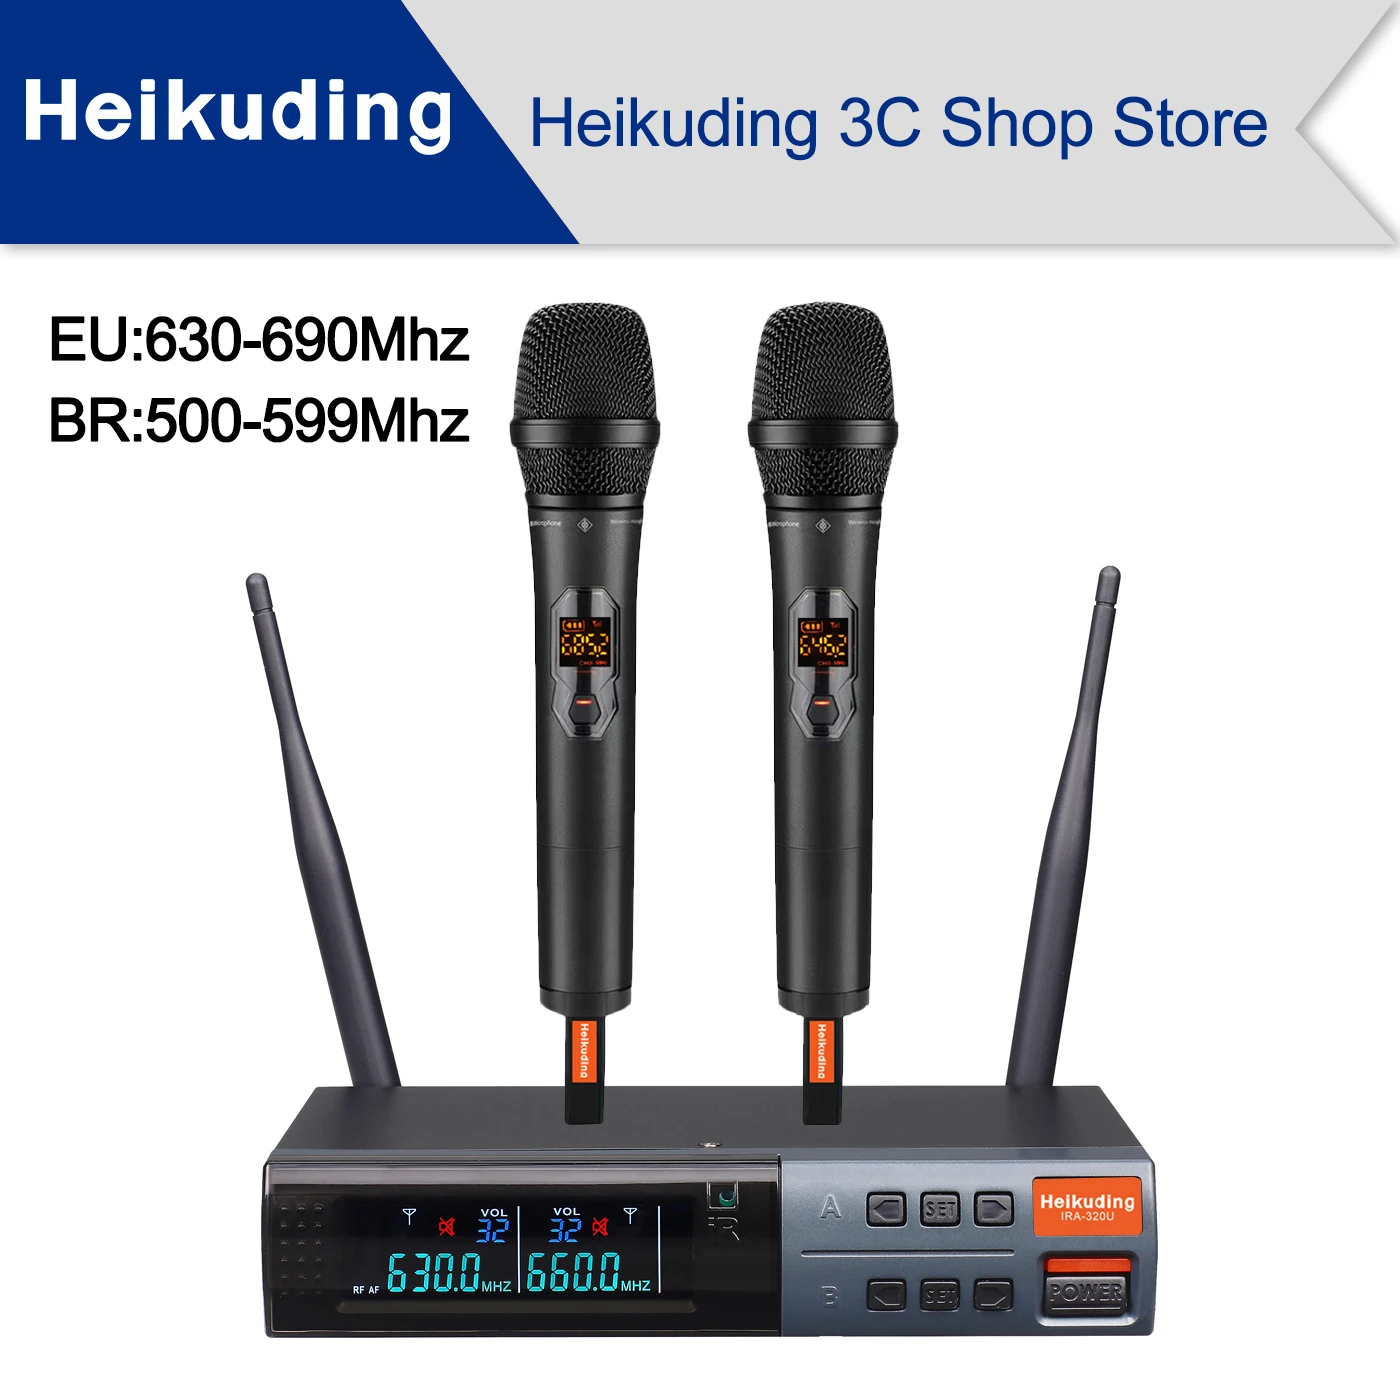 Heikuding IRA-320U 630-690 МГц, 2x100 Регулируемых УВЧ-Каналов, Автоматическое Сканирование, Профессиональный Двойной Беспроводной Микрофон, Динамический Материал